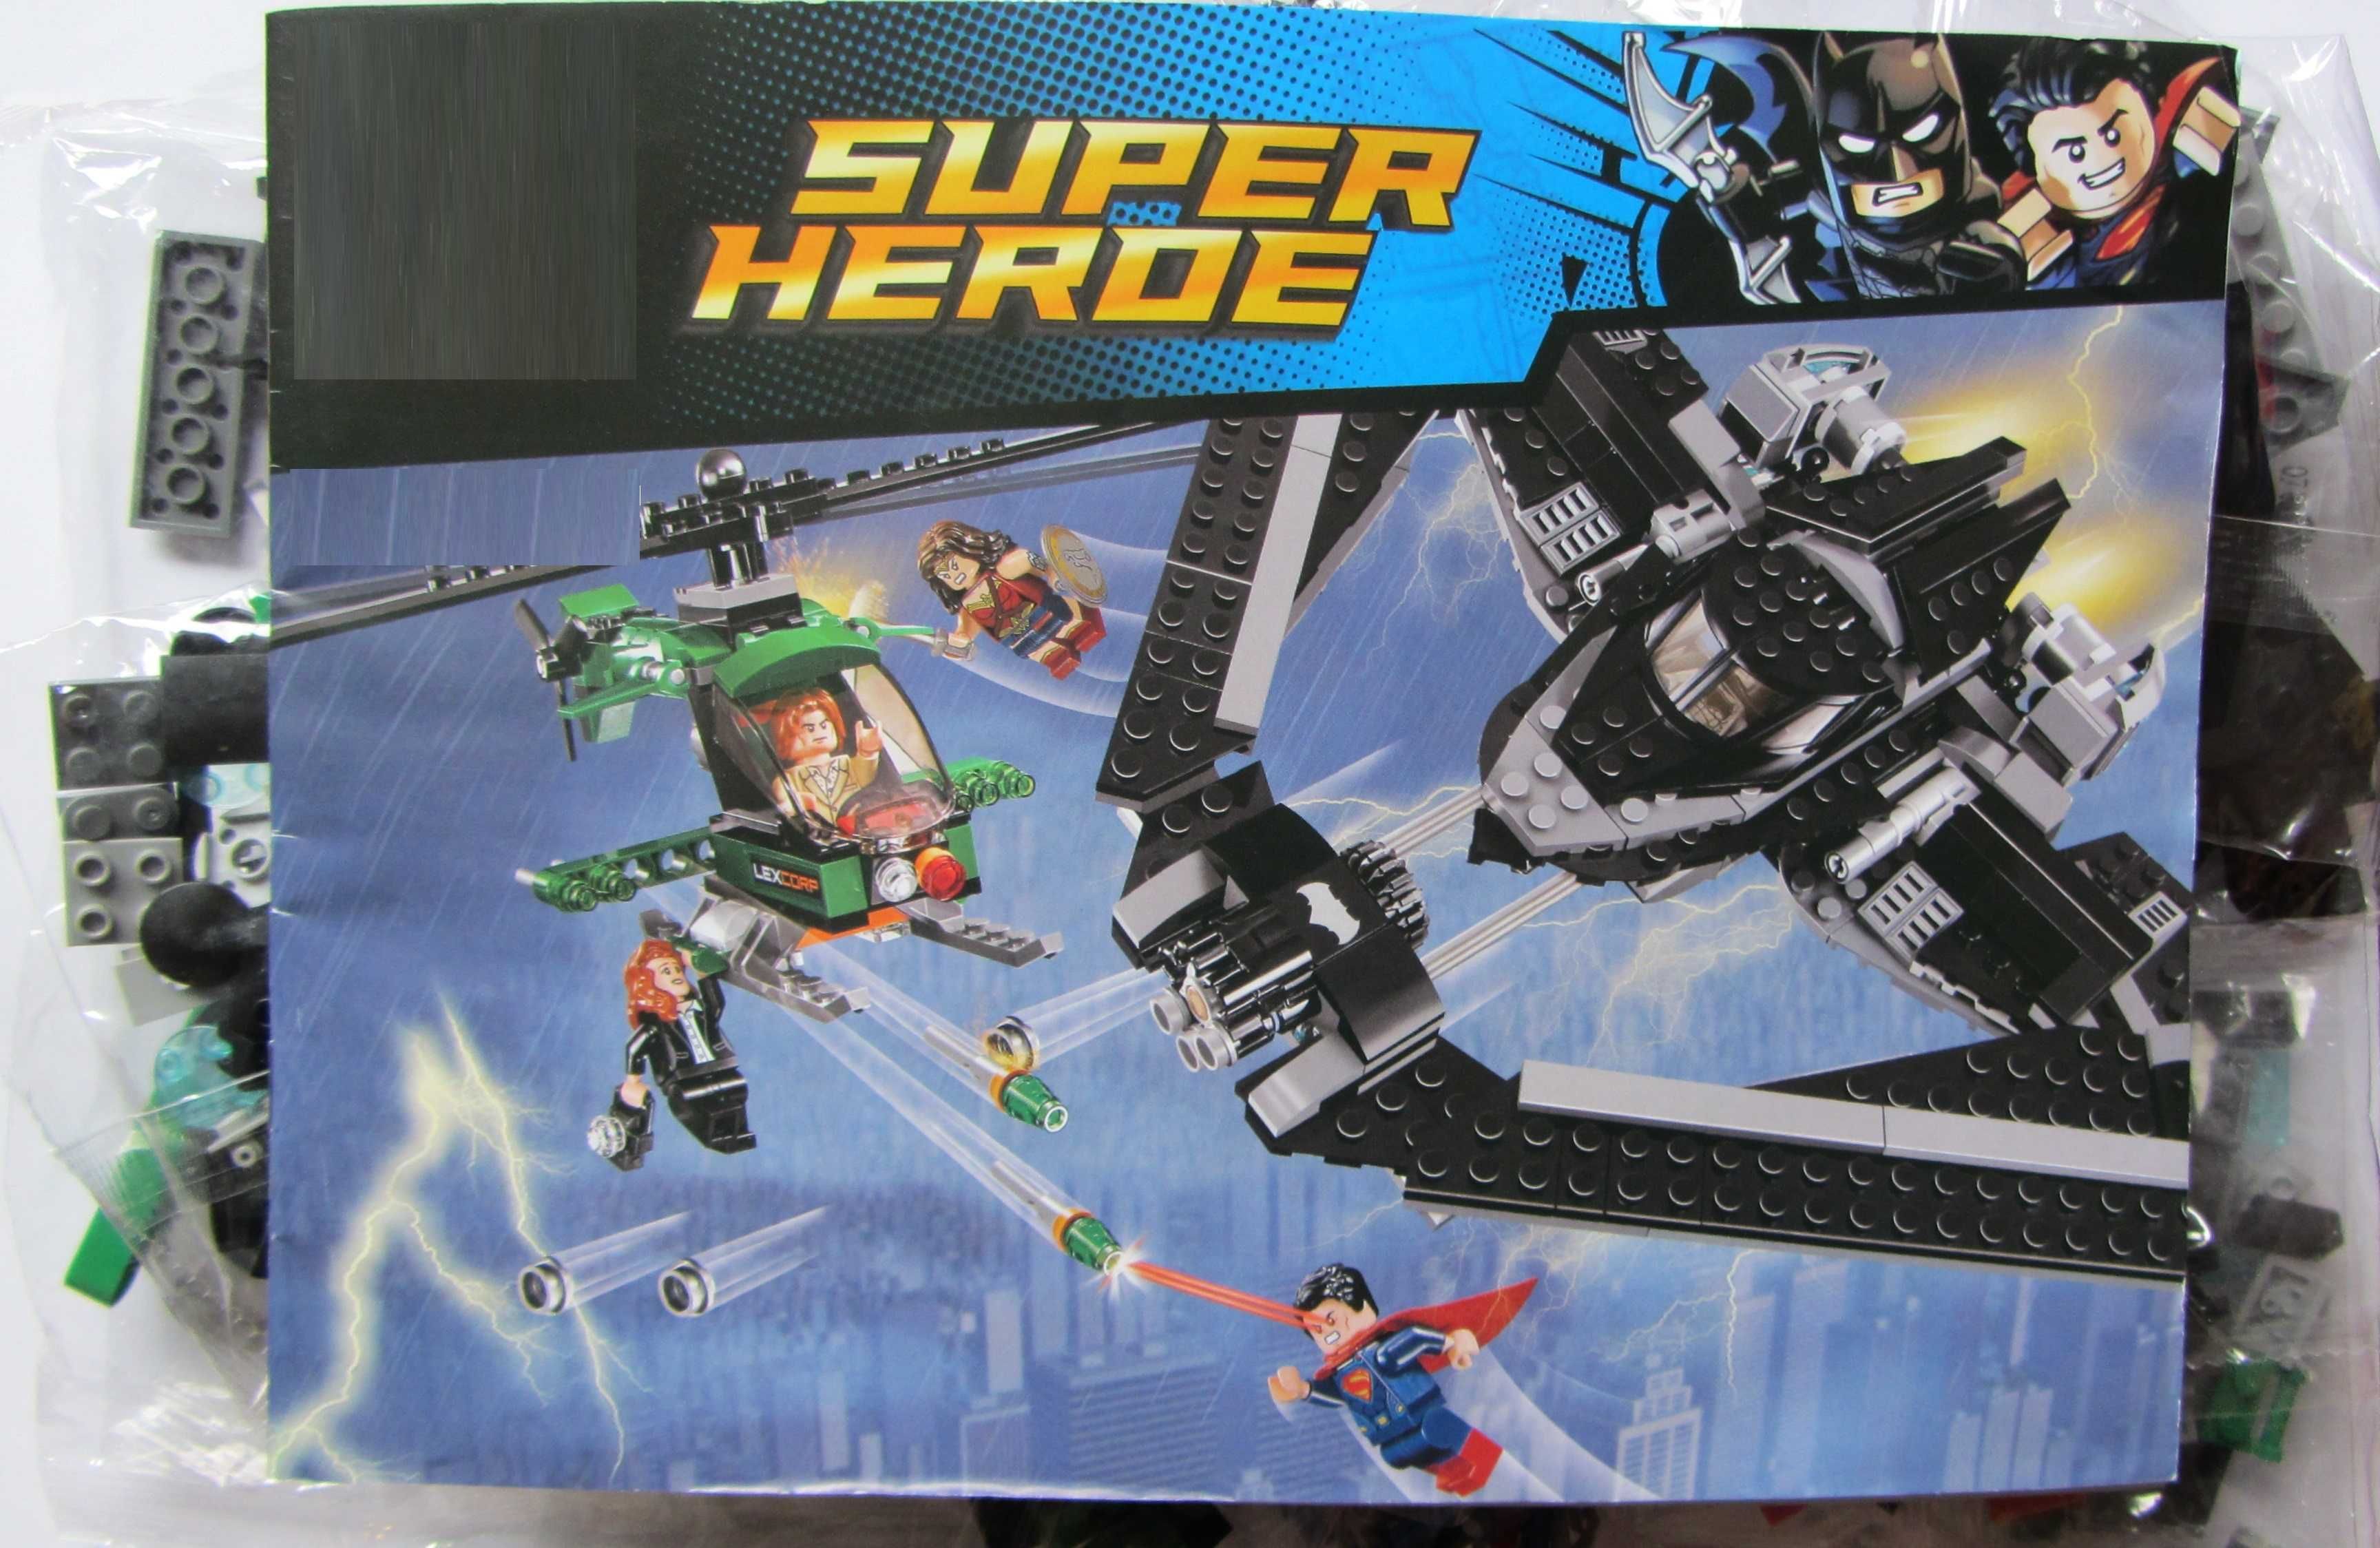 Set / Kit Batman vs Super Homem: Combate no Céu (compatível com Lego)